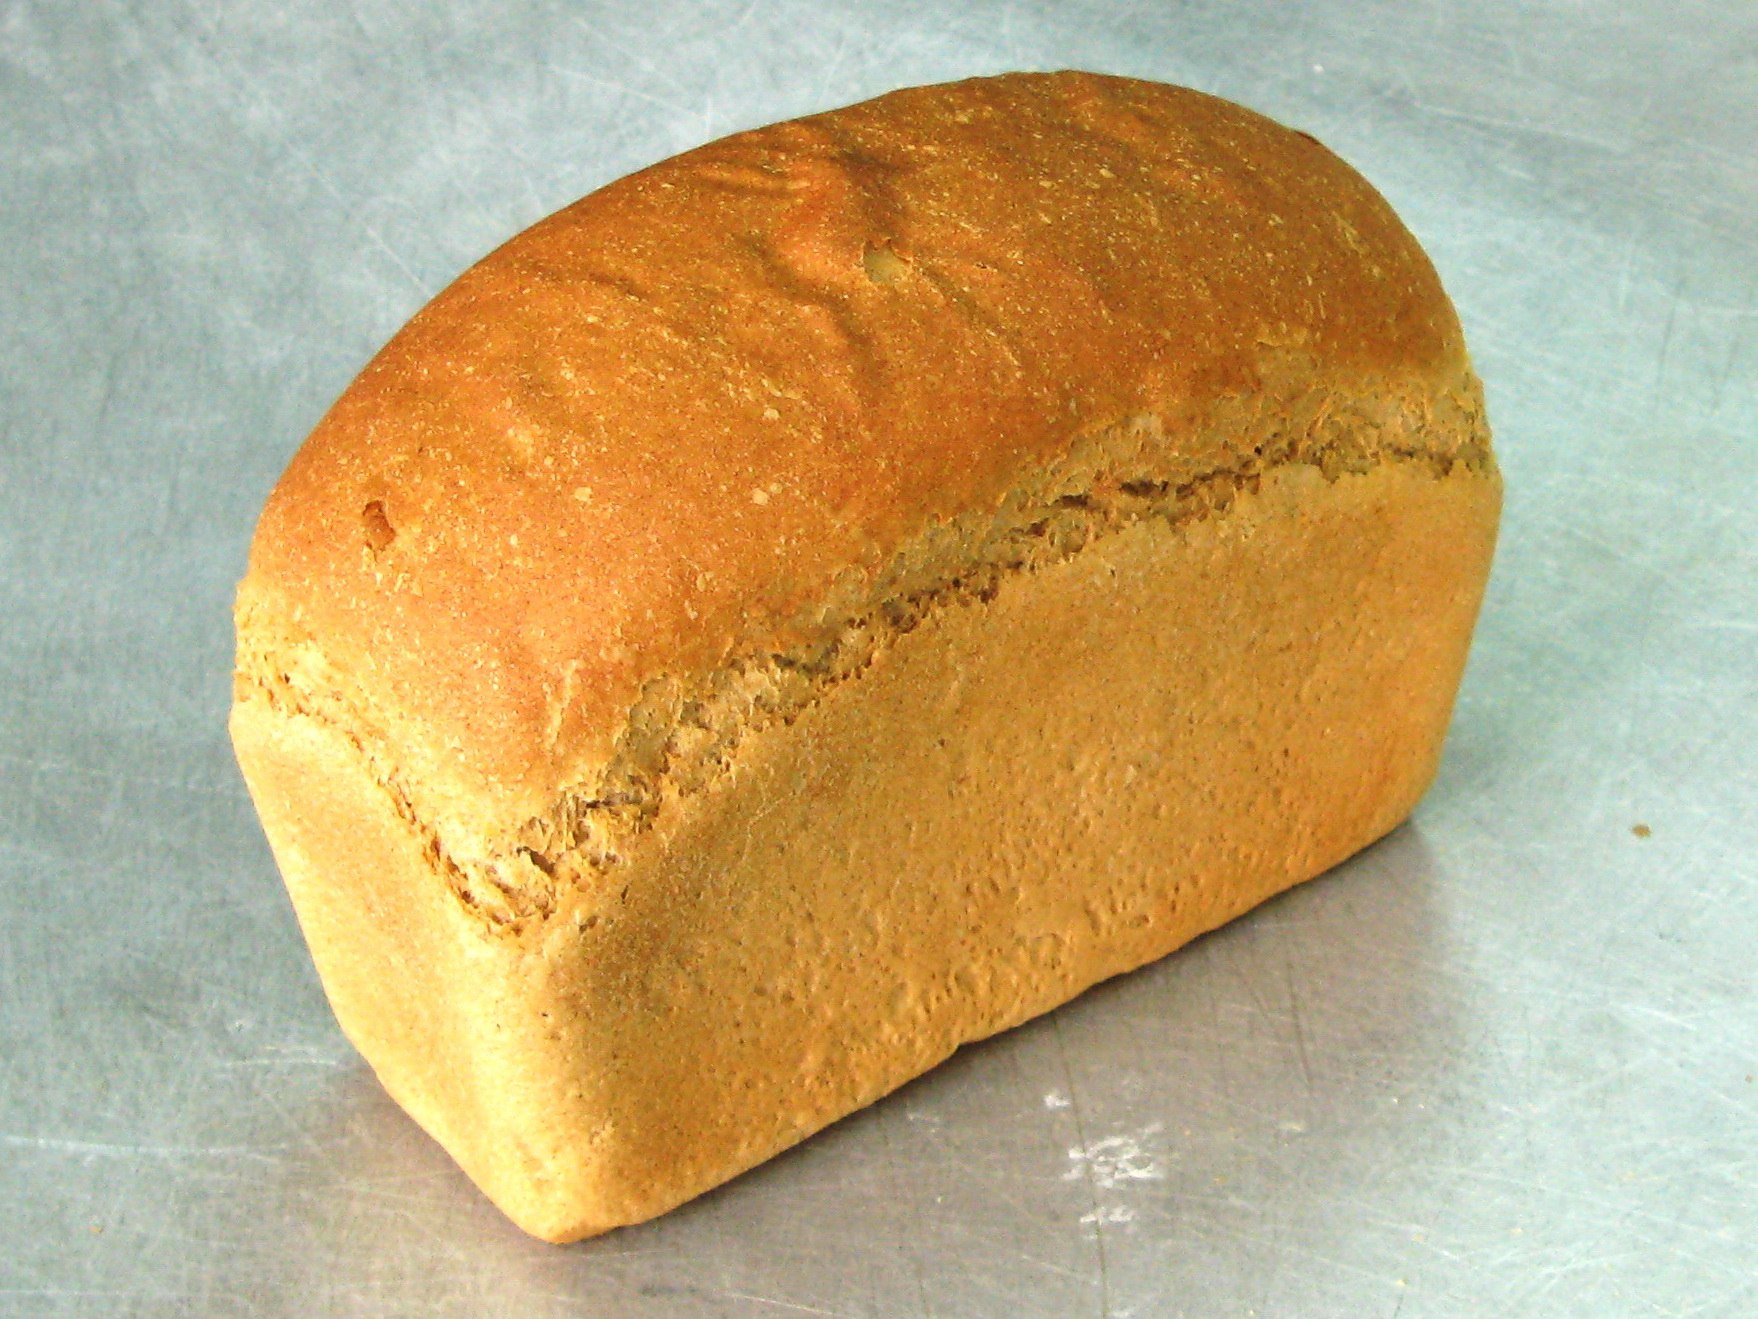 Пшеничный хлеб в форме. Хлеб пшеничный формовой. Ржано-пшеничный хлеб ржано-пшеничный хлеб. Хлеб Кишиневский пшеничный. Хлеб пшеничный из муки первого сорта формовой.